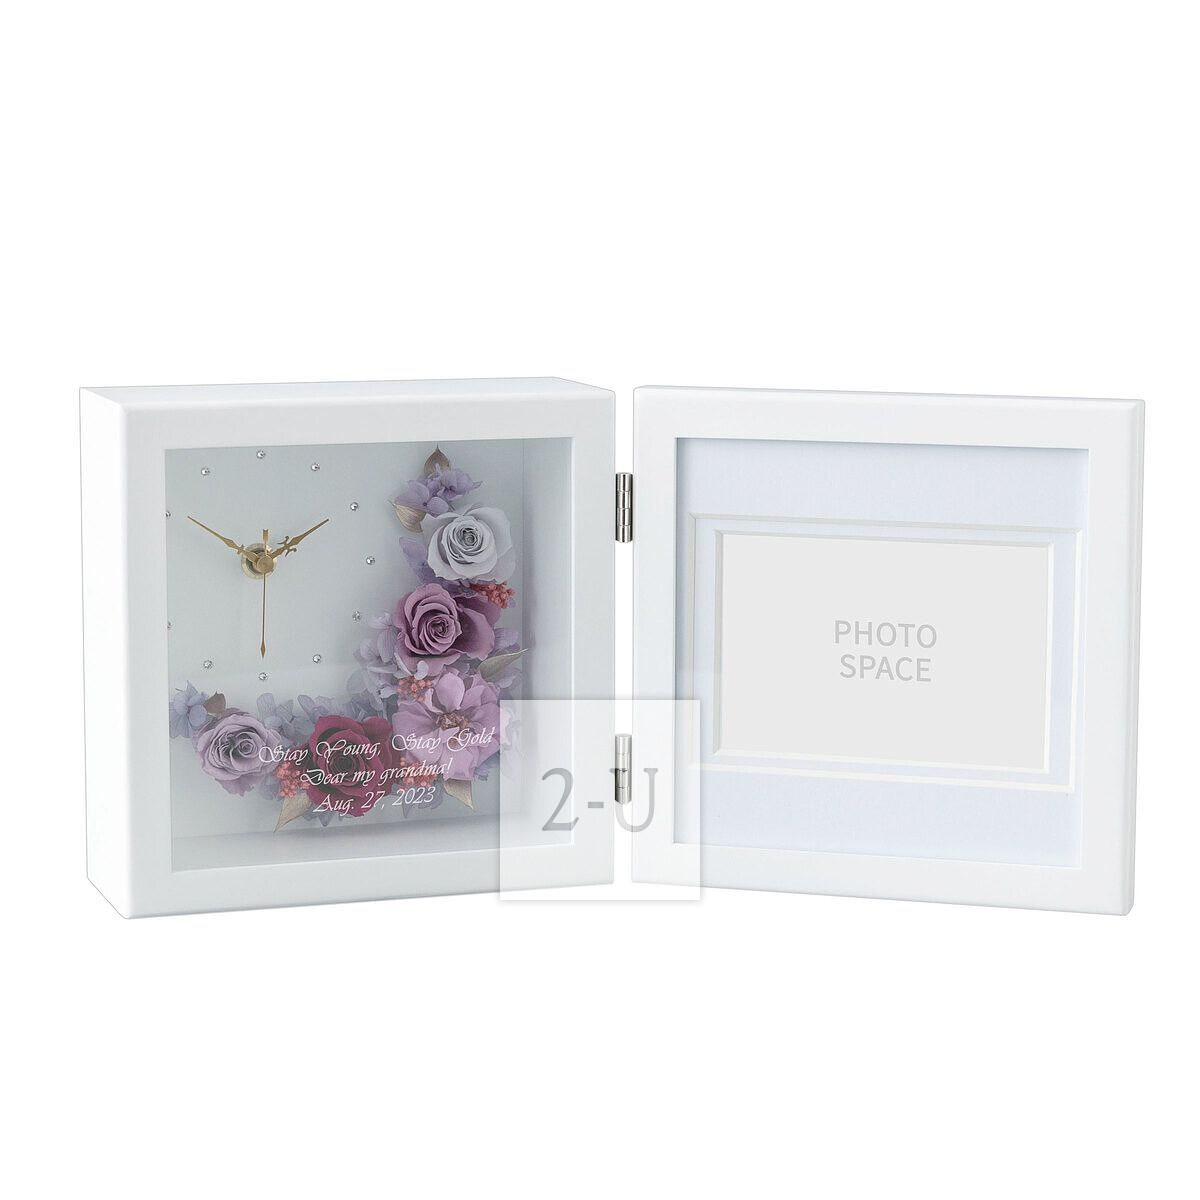 多綵玫瑰保鮮花相框相架帶時鐘 粉紫色玫瑰